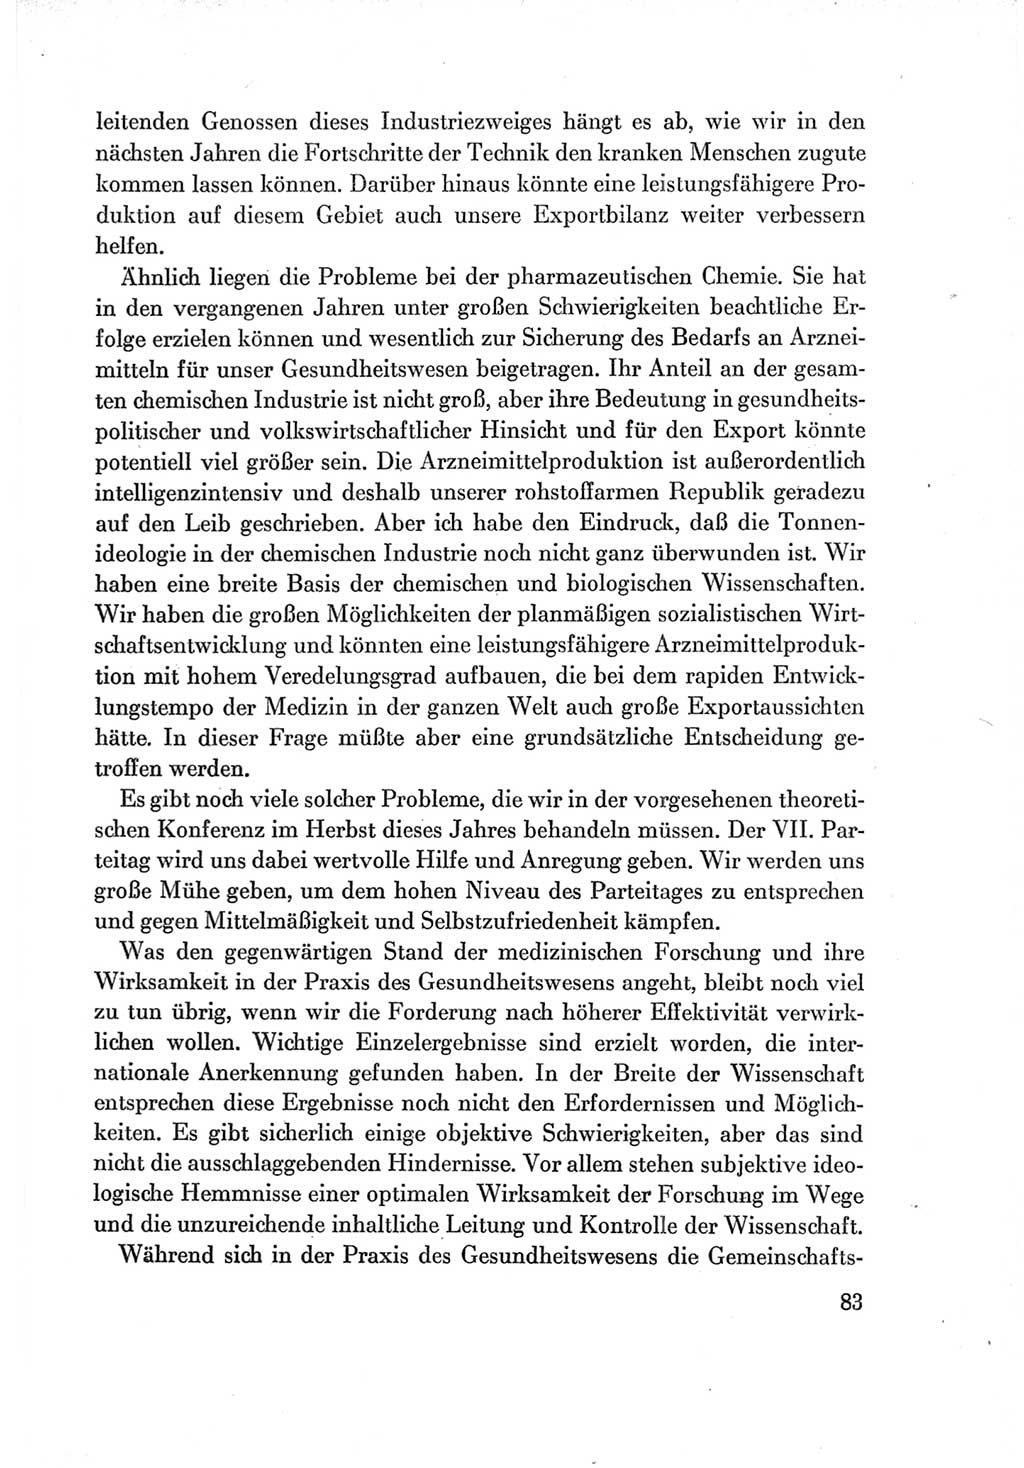 Protokoll der Verhandlungen des Ⅶ. Parteitages der Sozialistischen Einheitspartei Deutschlands (SED) [Deutsche Demokratische Republik (DDR)] 1967, Band Ⅱ, Seite 83 (Prot. Verh. Ⅶ. PT SED DDR 1967, Bd. Ⅱ, S. 83)